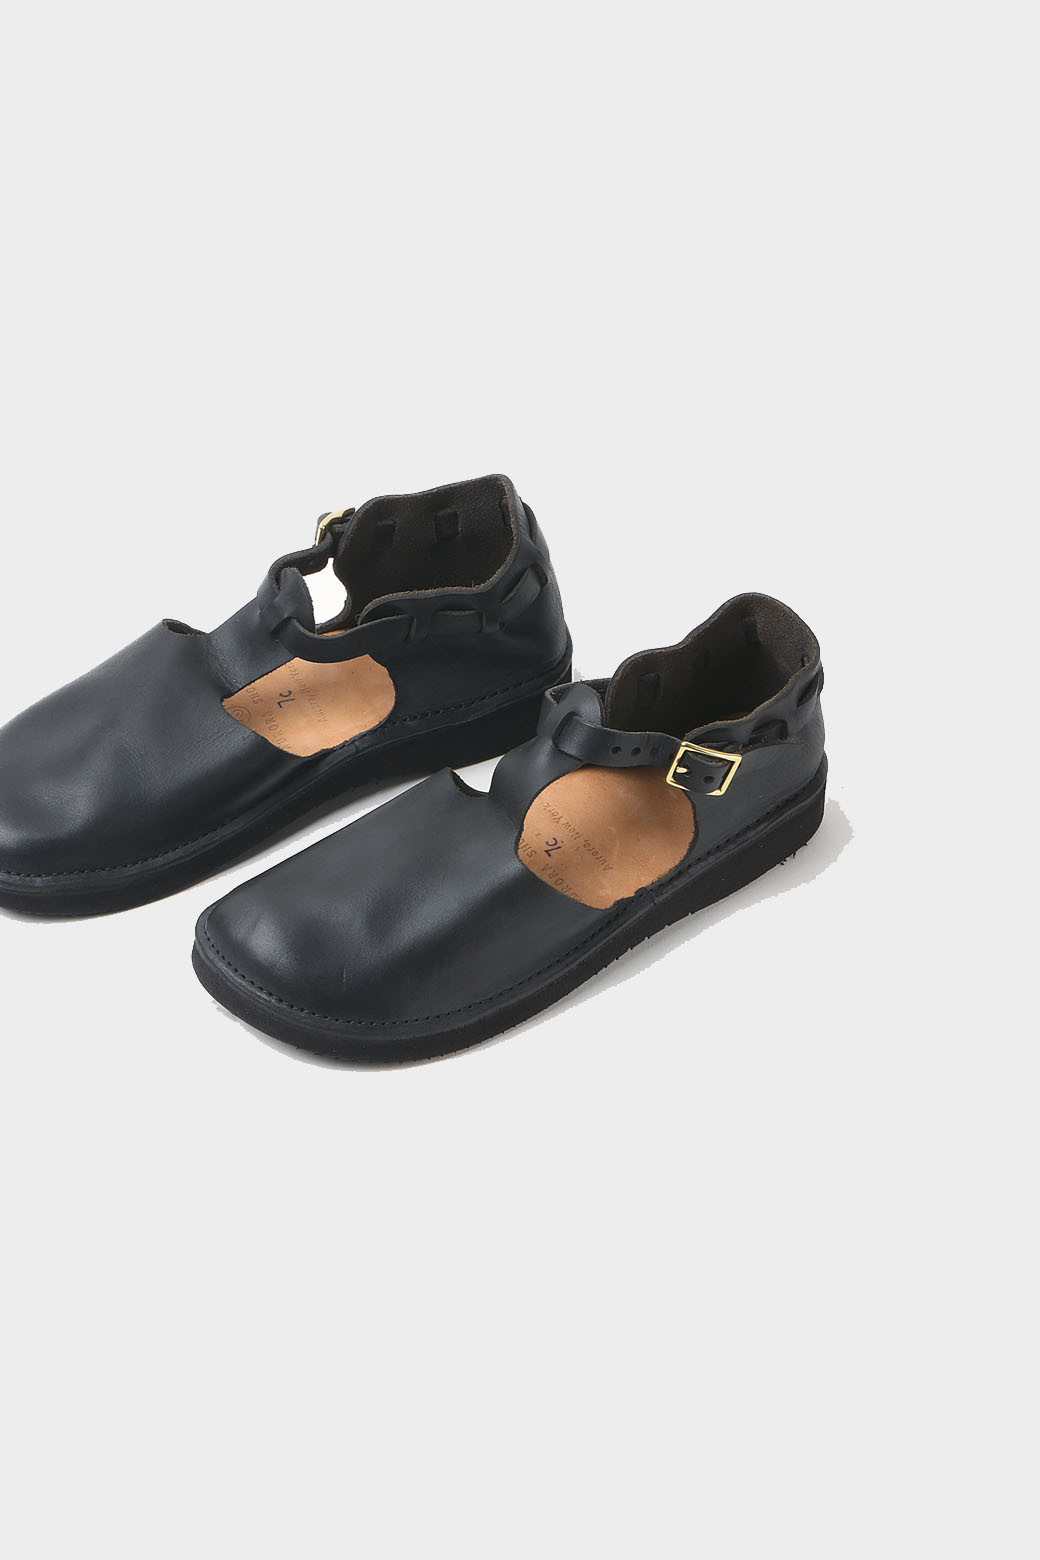 [Aurora Shoe Co.]West Indian(Black)_Aurora Shoe Co